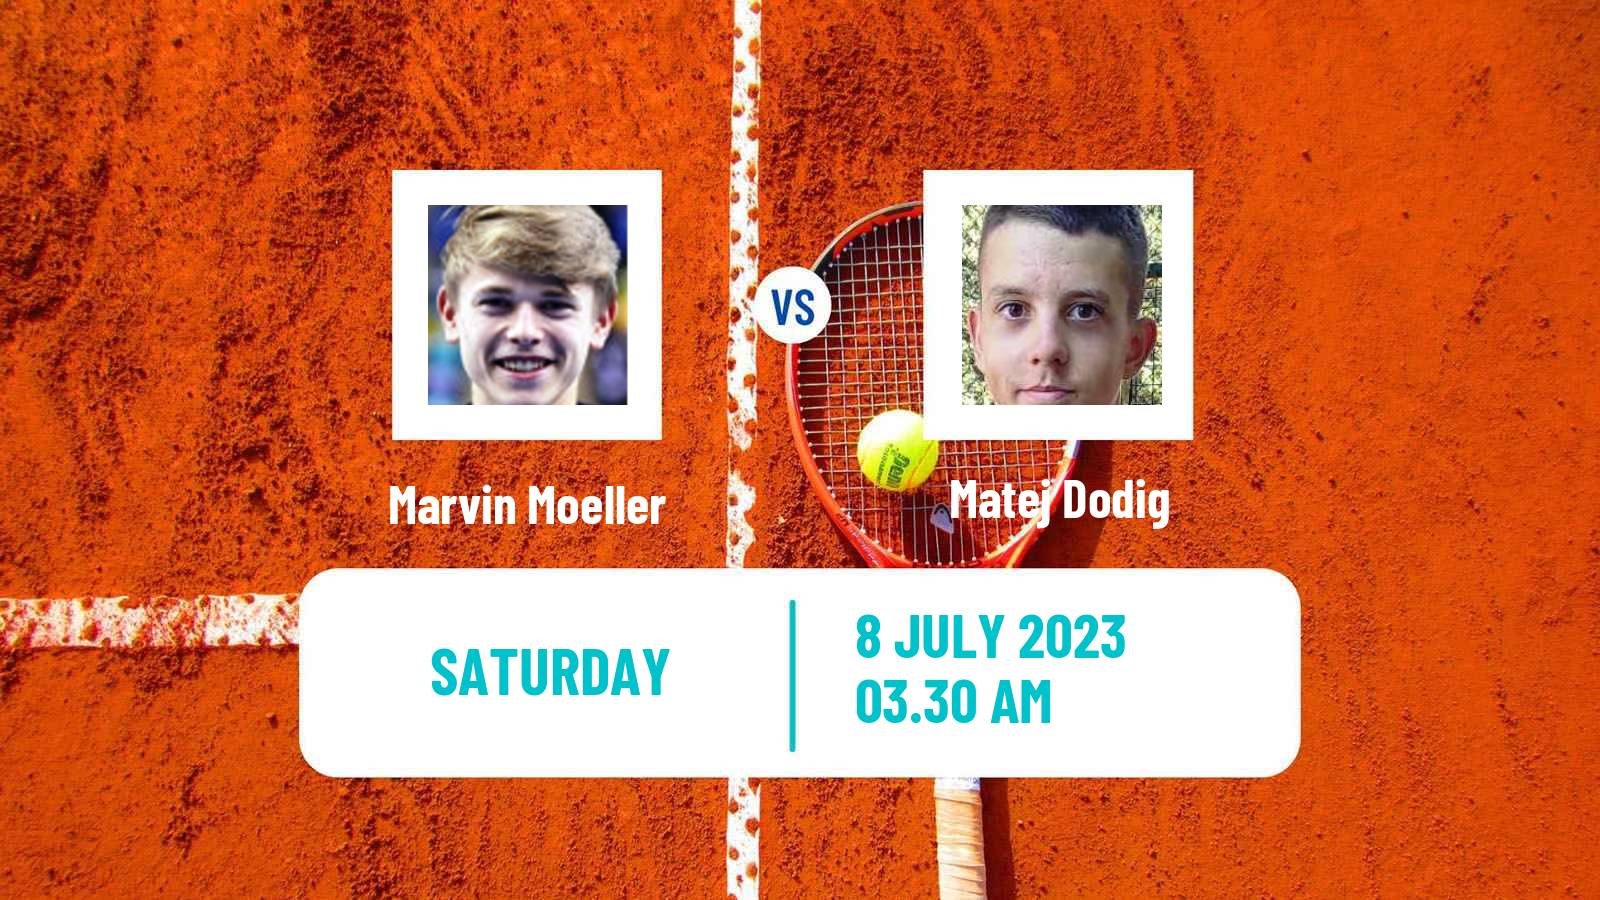 Tennis ITF M15 Sofia Men Marvin Moeller - Matej Dodig